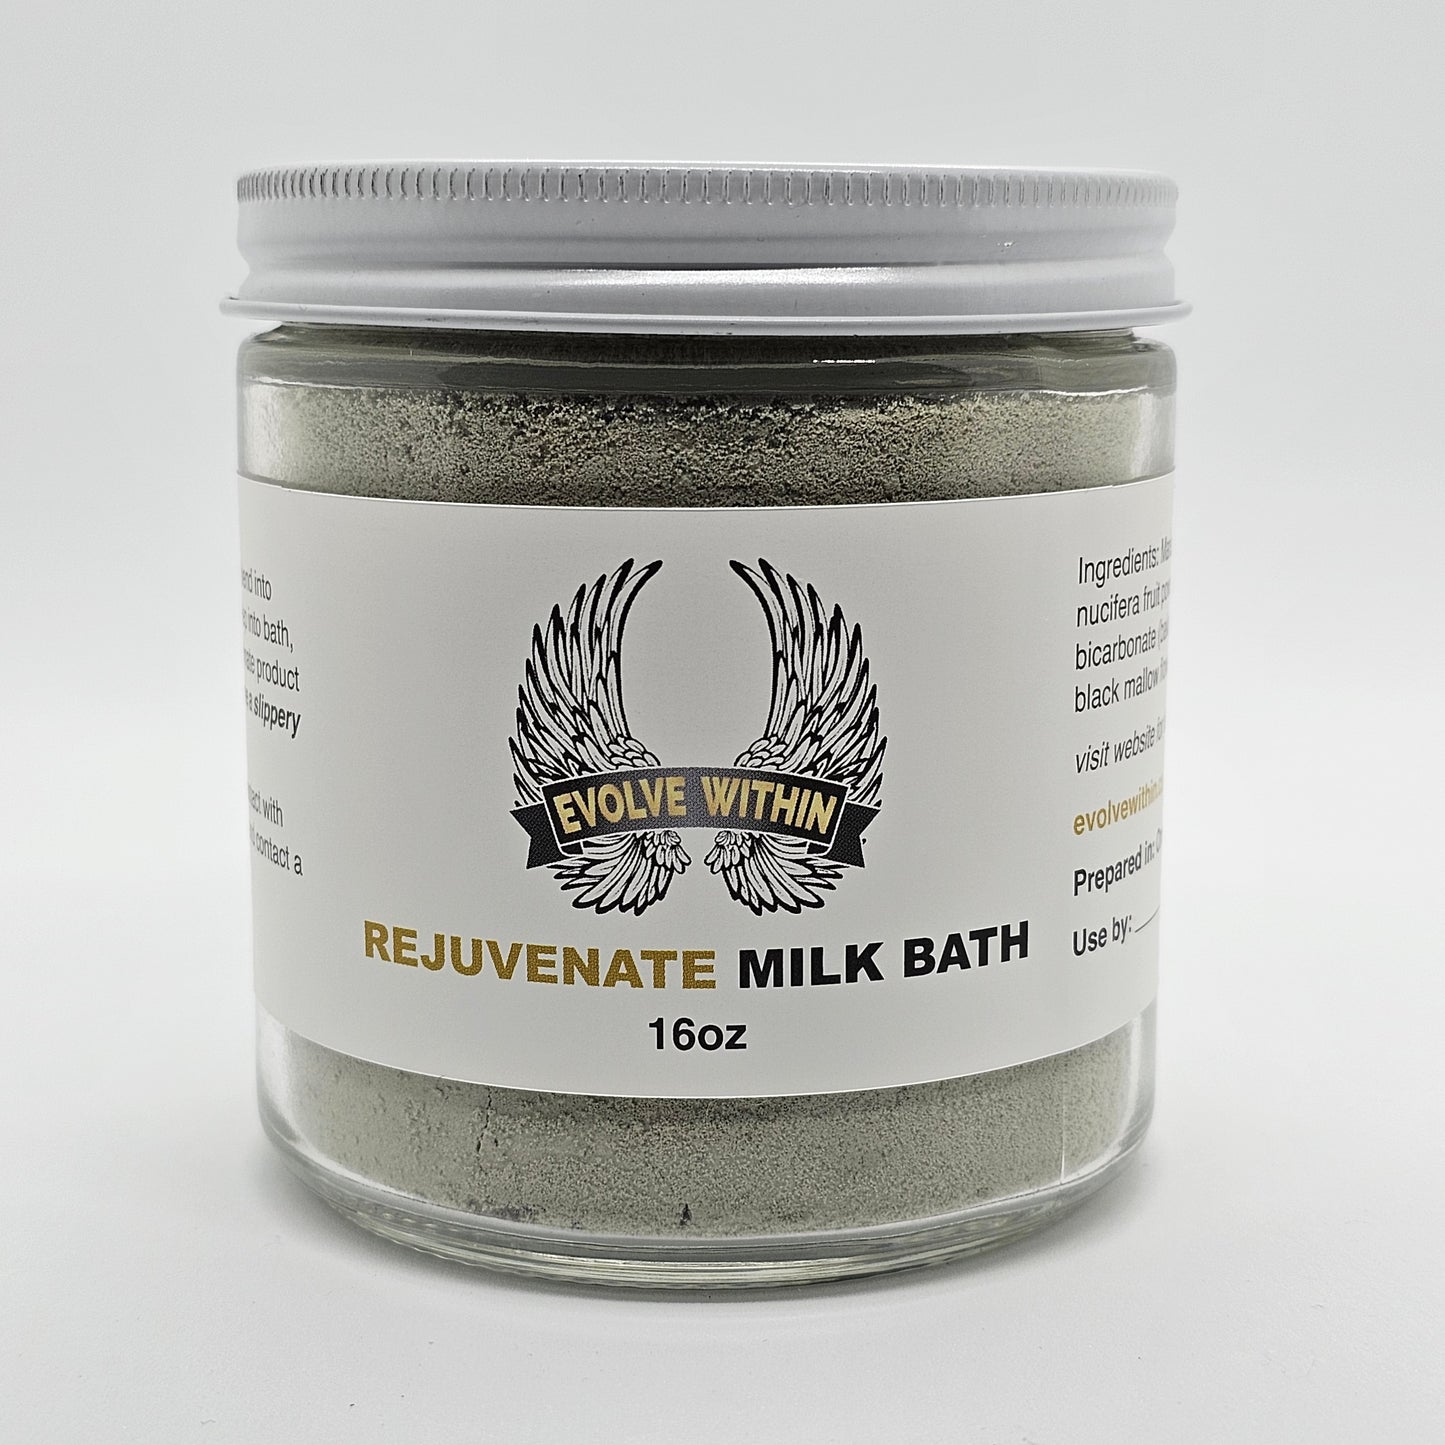 Rejuvenate Milk Bath